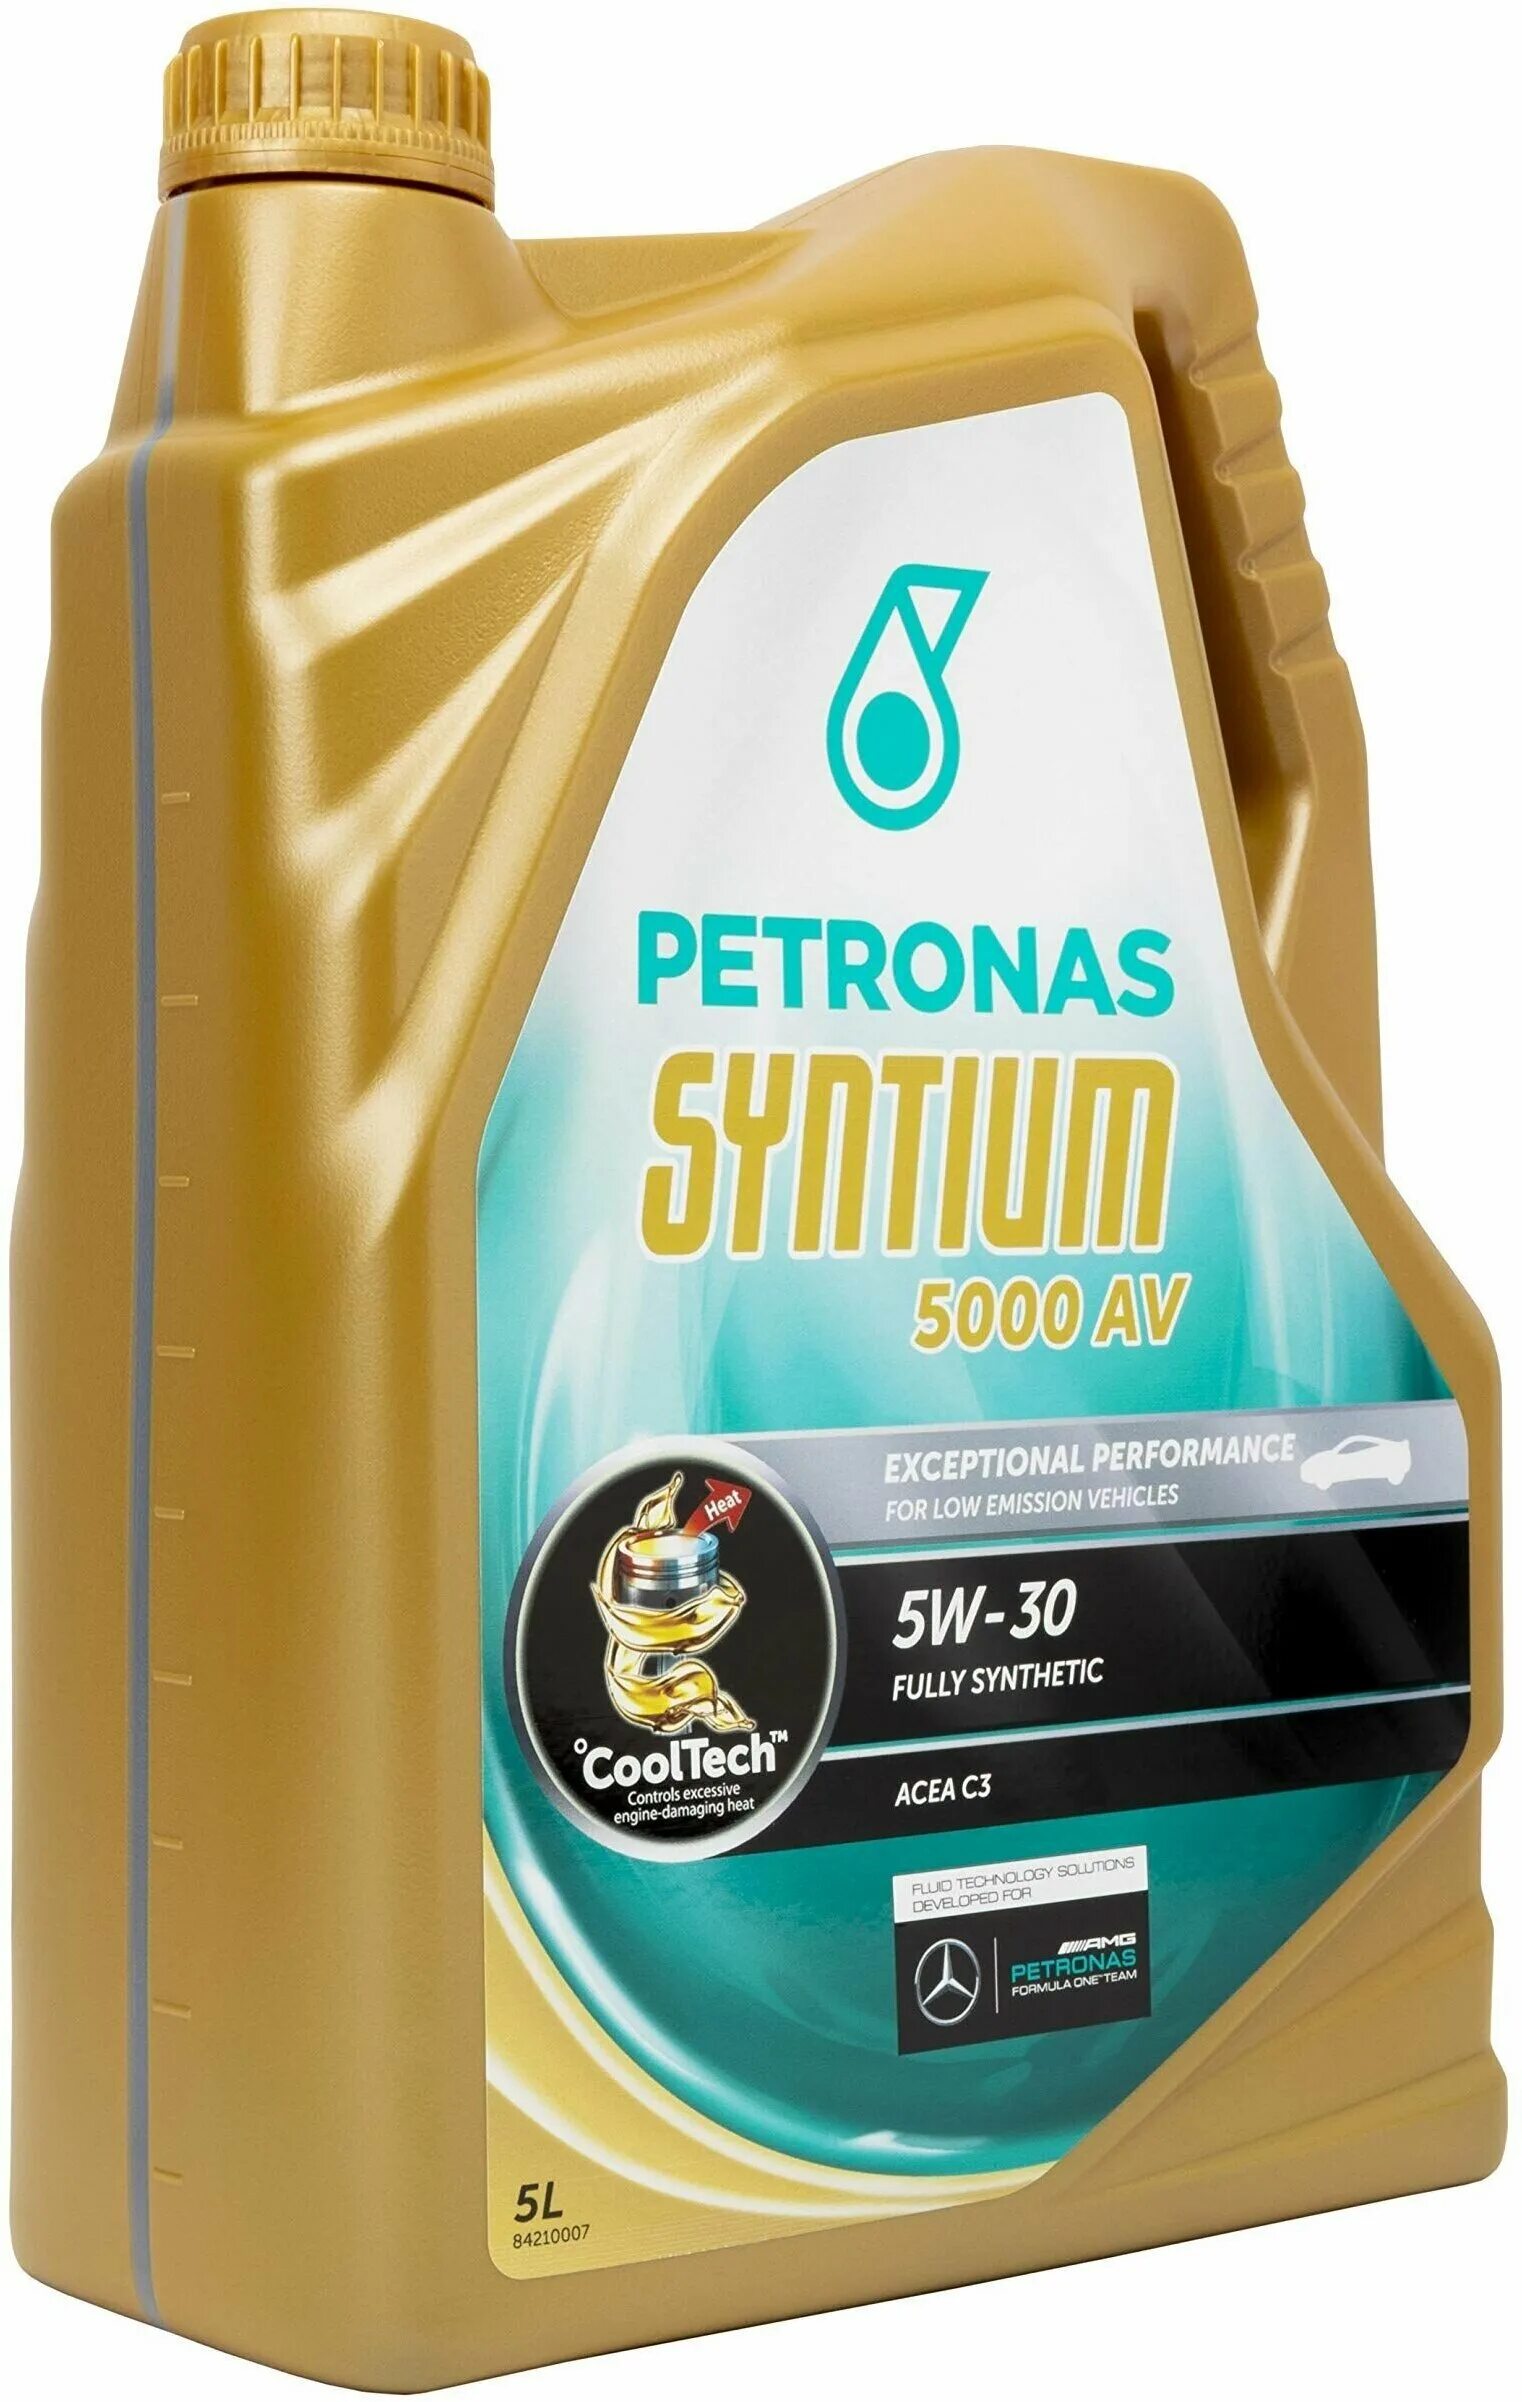 Petronas 5000 av. Petronas Syntium 3000 av 5w40. Petronas Syntium 3000 5w-40. Syntium 5000 av 5w30. Petronas Syntium 5/40.